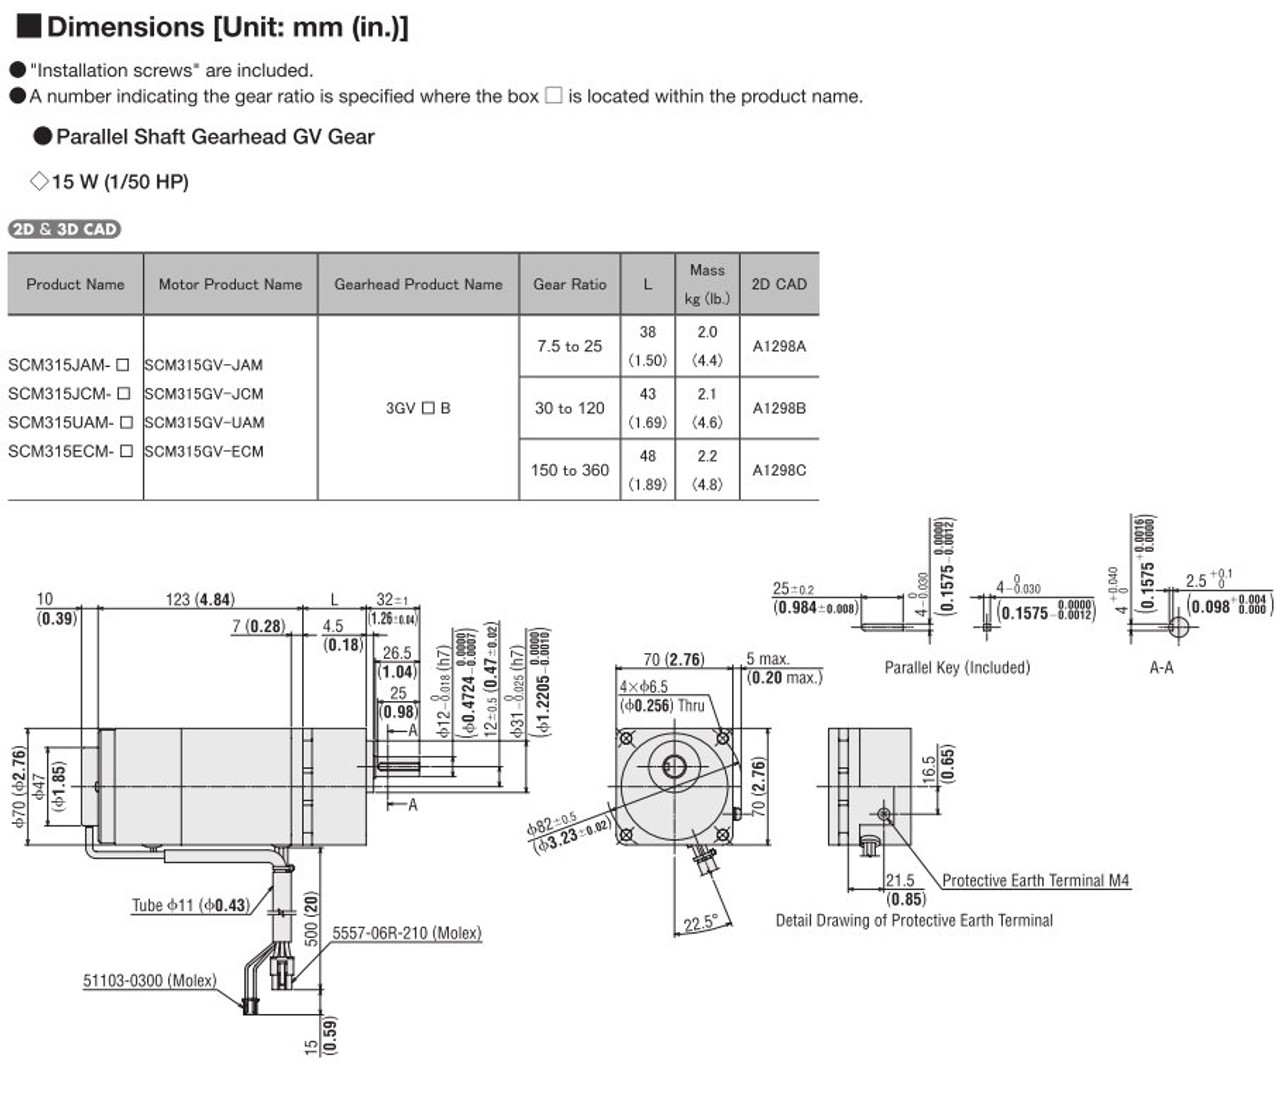 SCM315ECM-30 - Dimensions